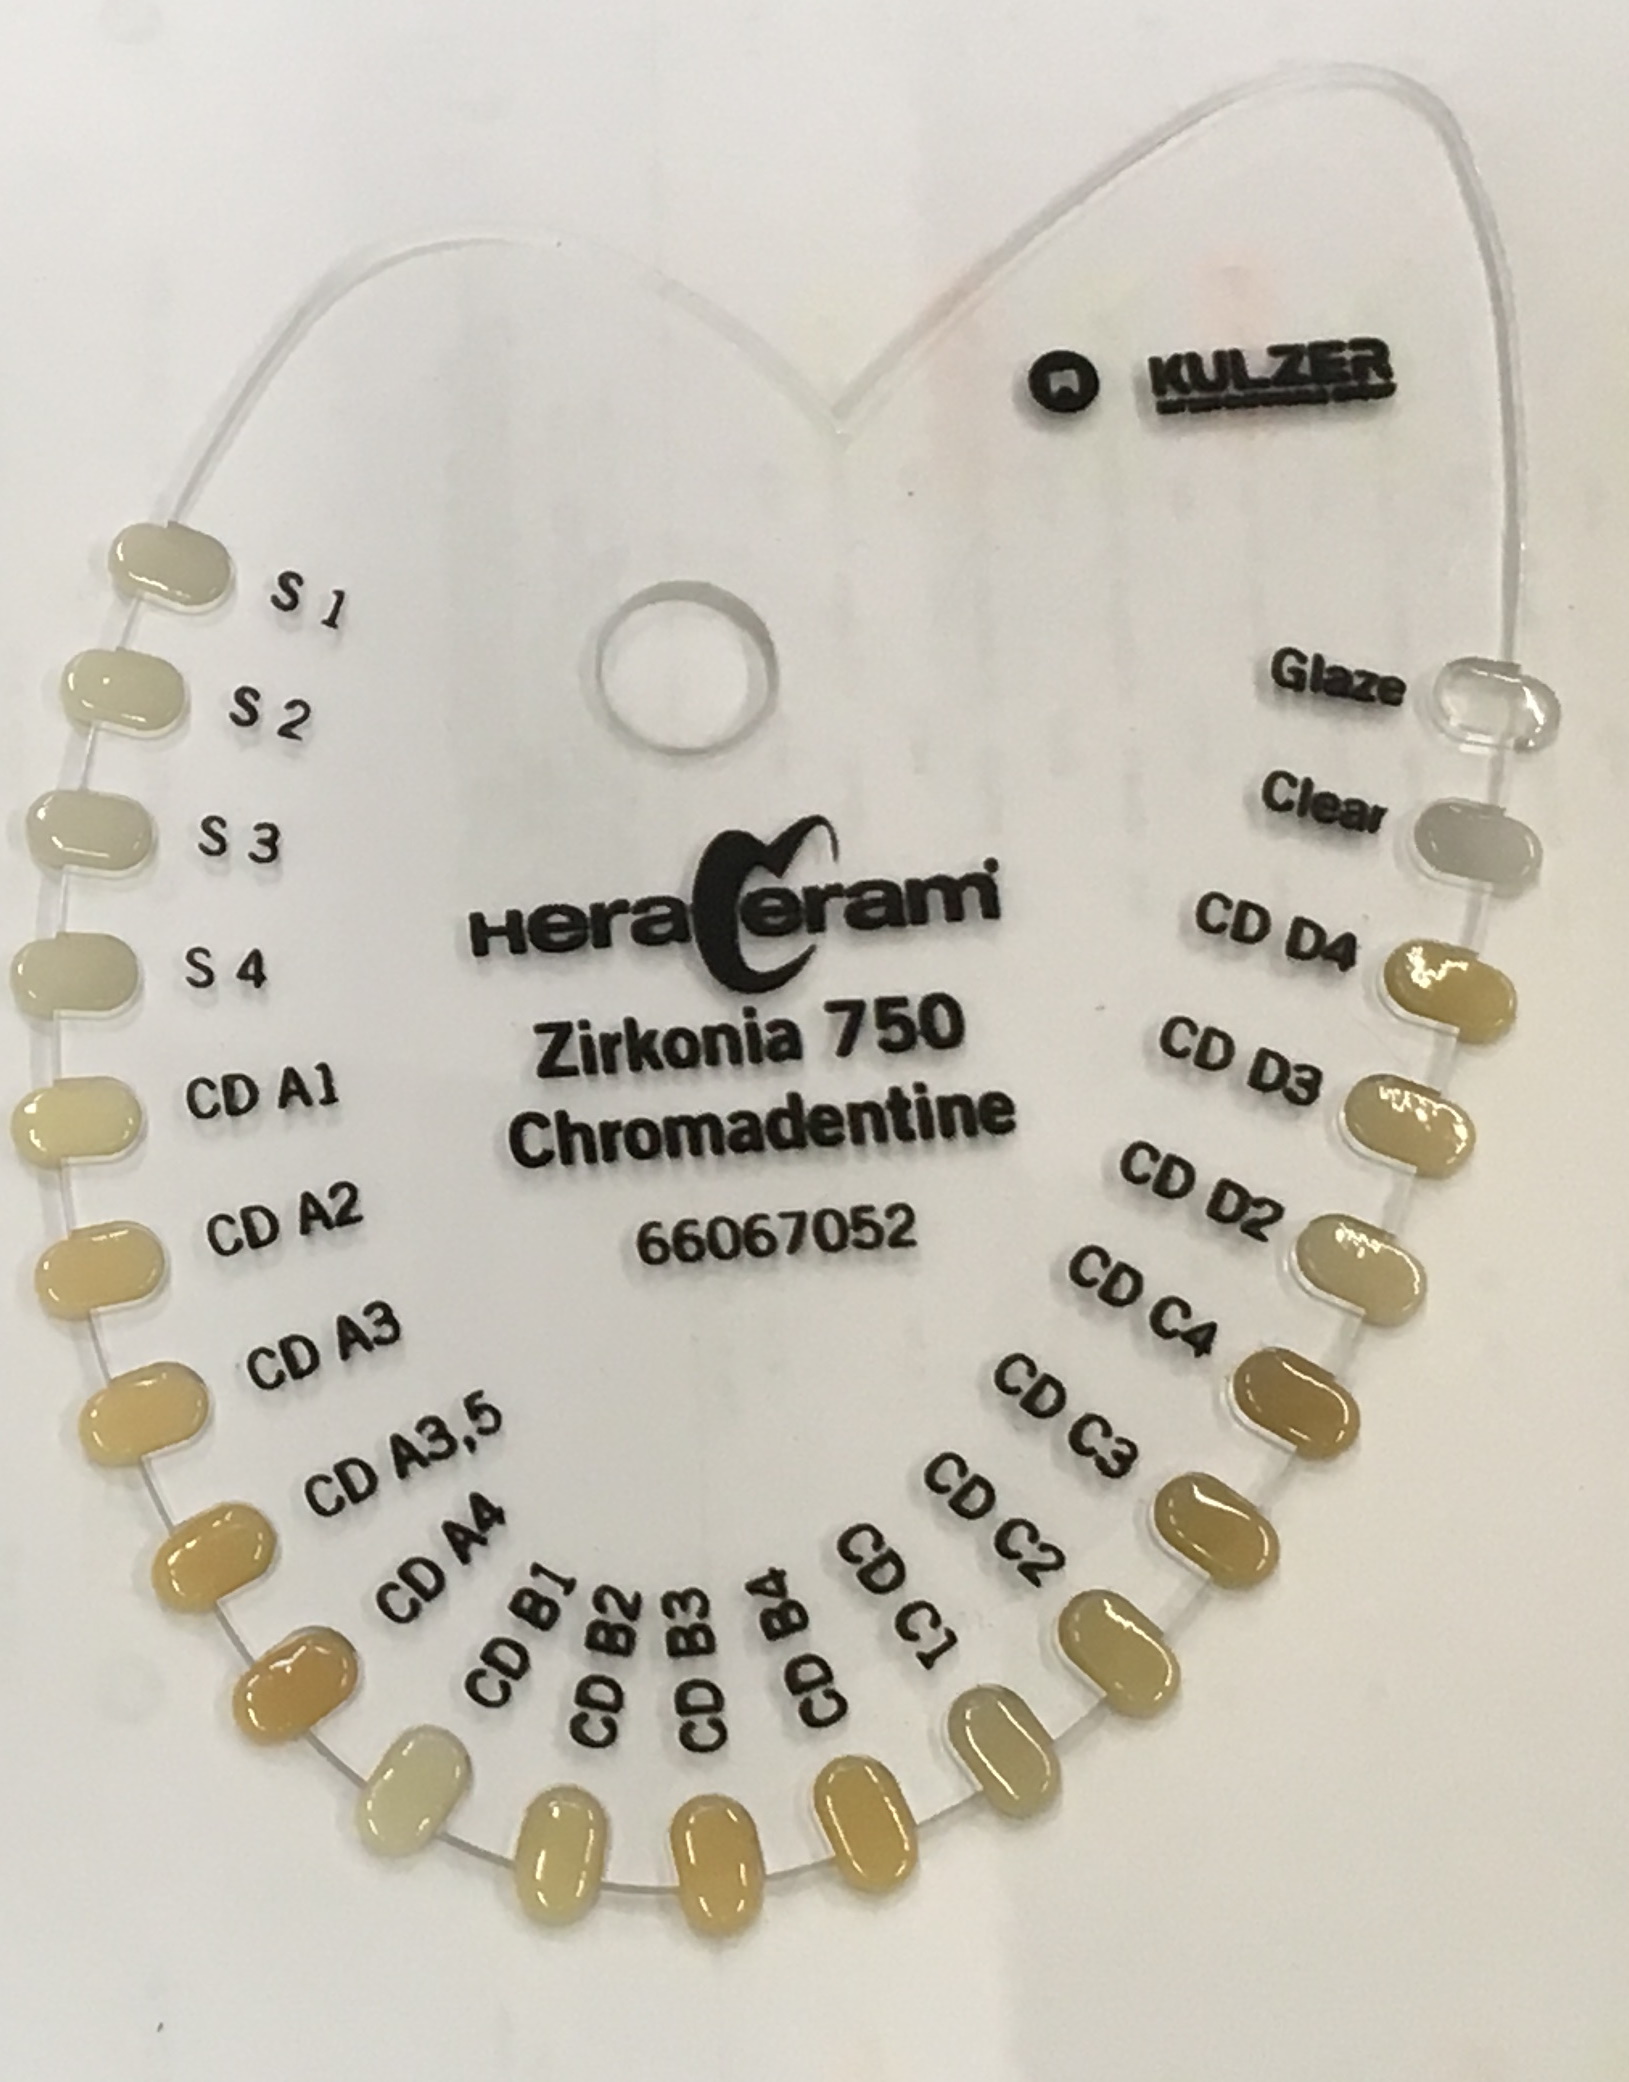 Хромадентин HeraCeram Zirkonia 750 Chromadentine CDD4, 20 г